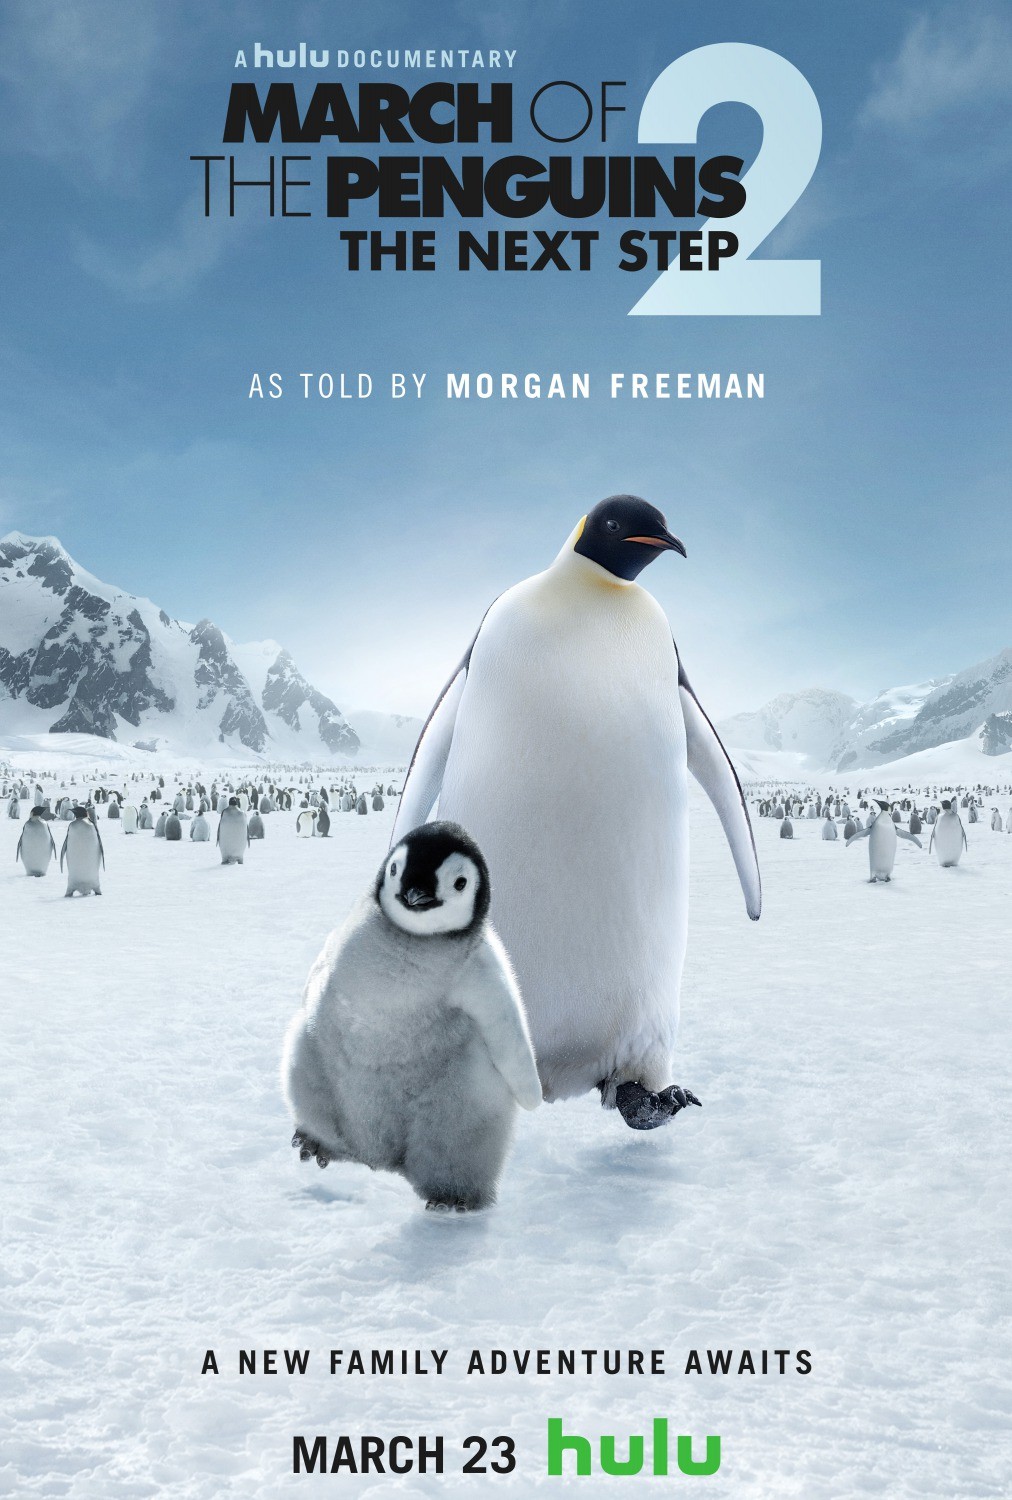 Марш пингвинов 2. Следующий шаг / L`empereur (2017) отзывы. Рецензии. Новости кино. Актеры фильма Марш пингвинов 2. Следующий шаг. Отзывы о фильме Марш пингвинов 2. Следующий шаг